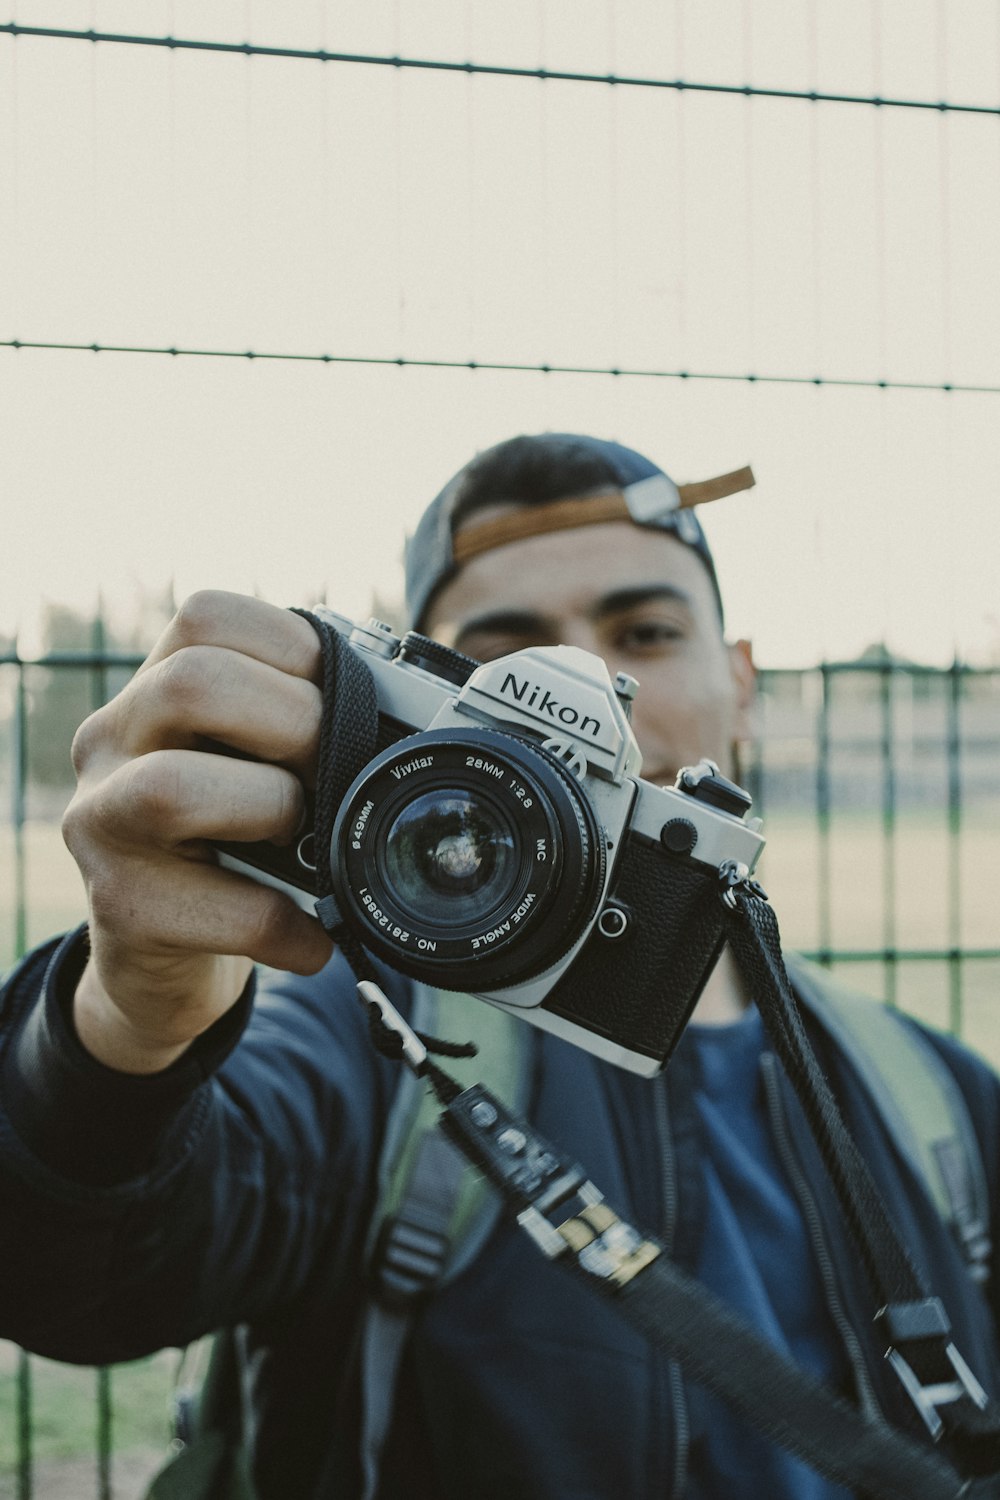 Mann mit schwarz-weißer Nikon-DSLR-Kamera im Freien während des Tages